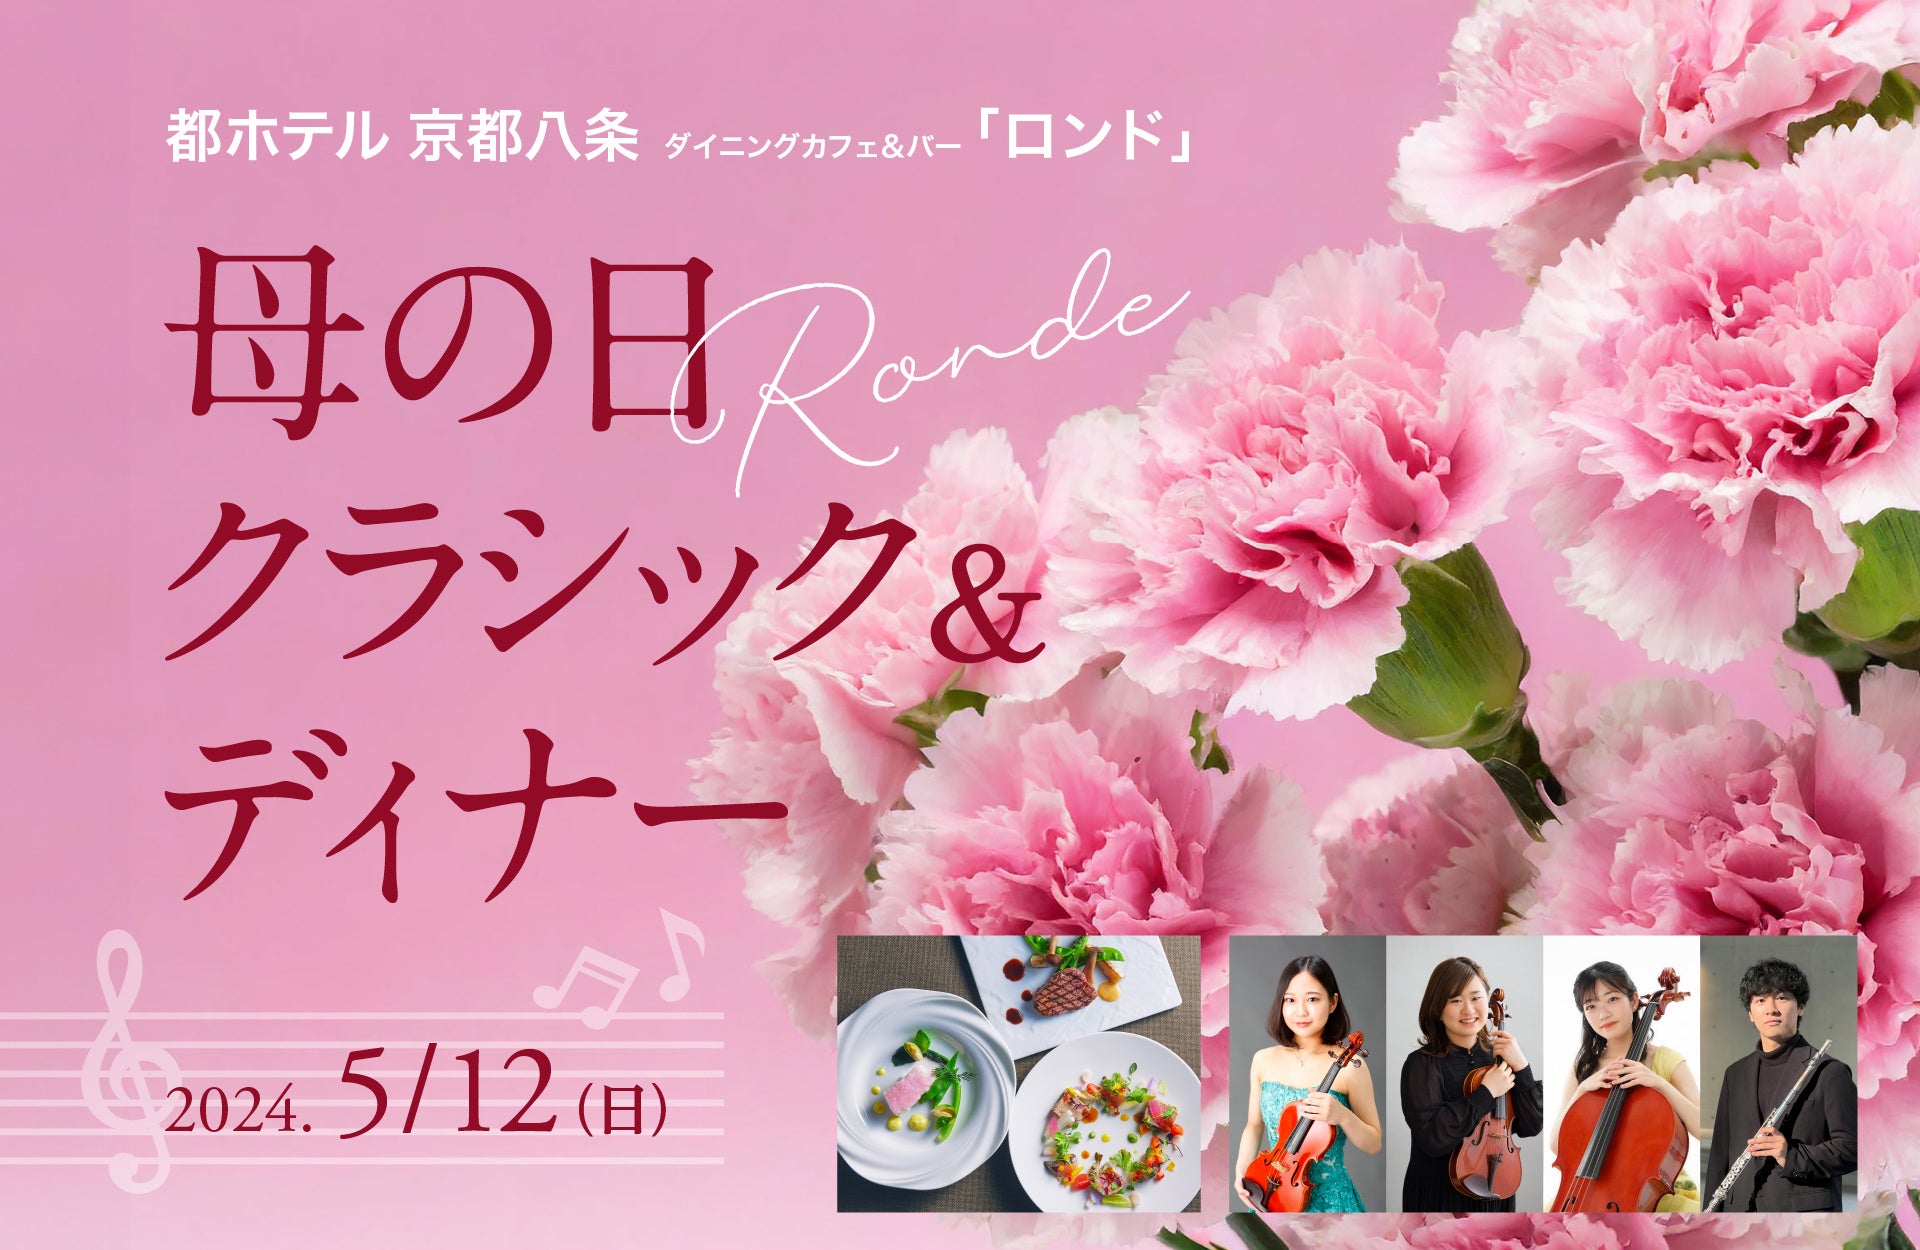 東京・日比谷「LEXUS MEETS…」が和スイーツと日本各地の魅力を楽しむカフェラウンジとして2024年4月18日(木)リニューアルオープン。